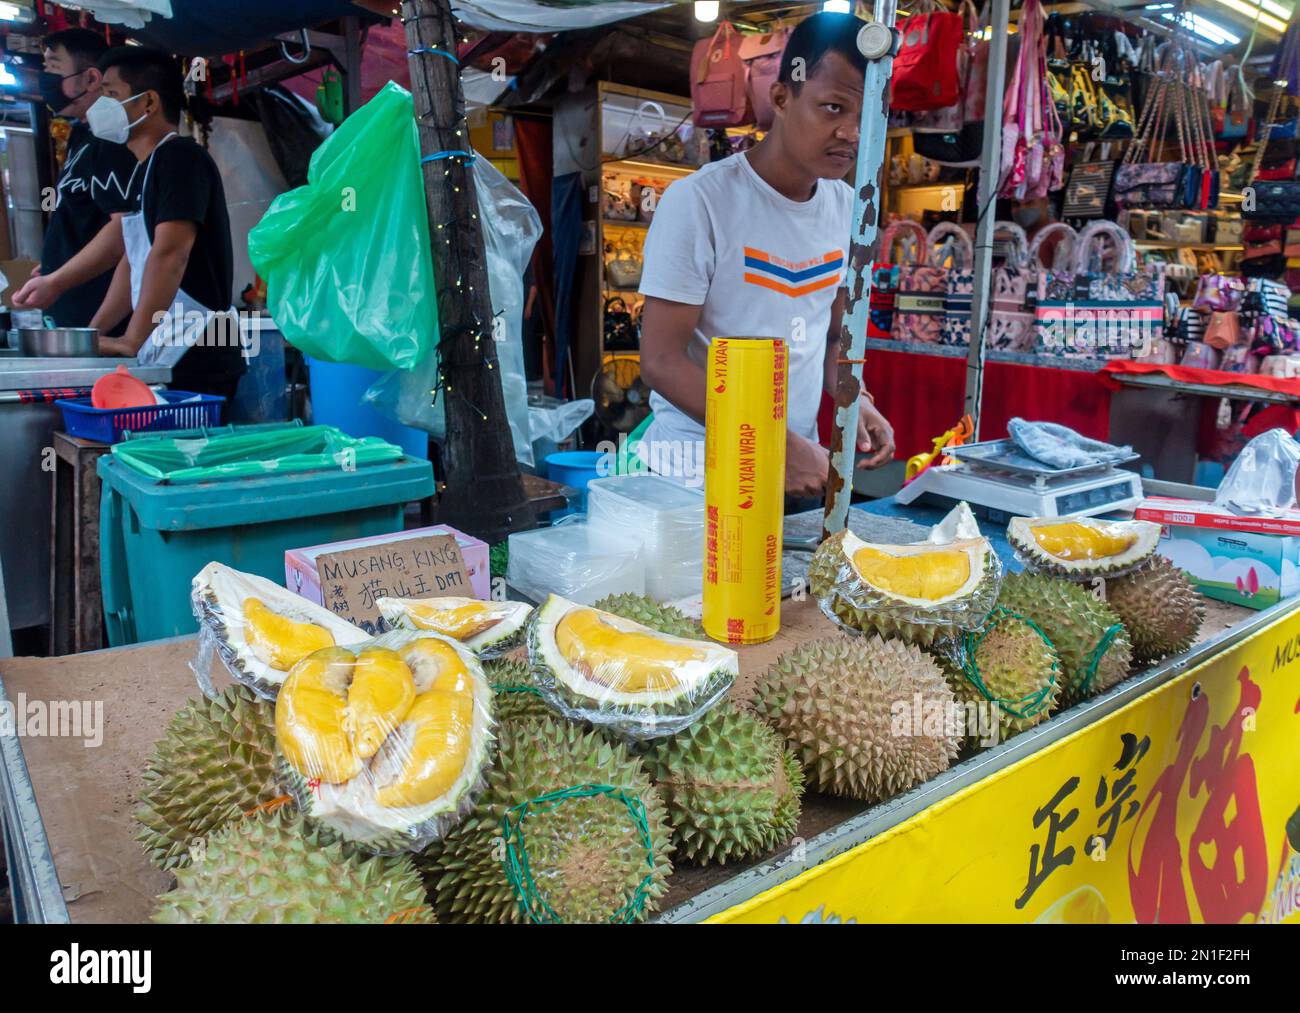 Petaling Street or Jalan Petaling Market in Kuala Lumpur, Malaysia Man cutting Durian Fruit. Stock Photo